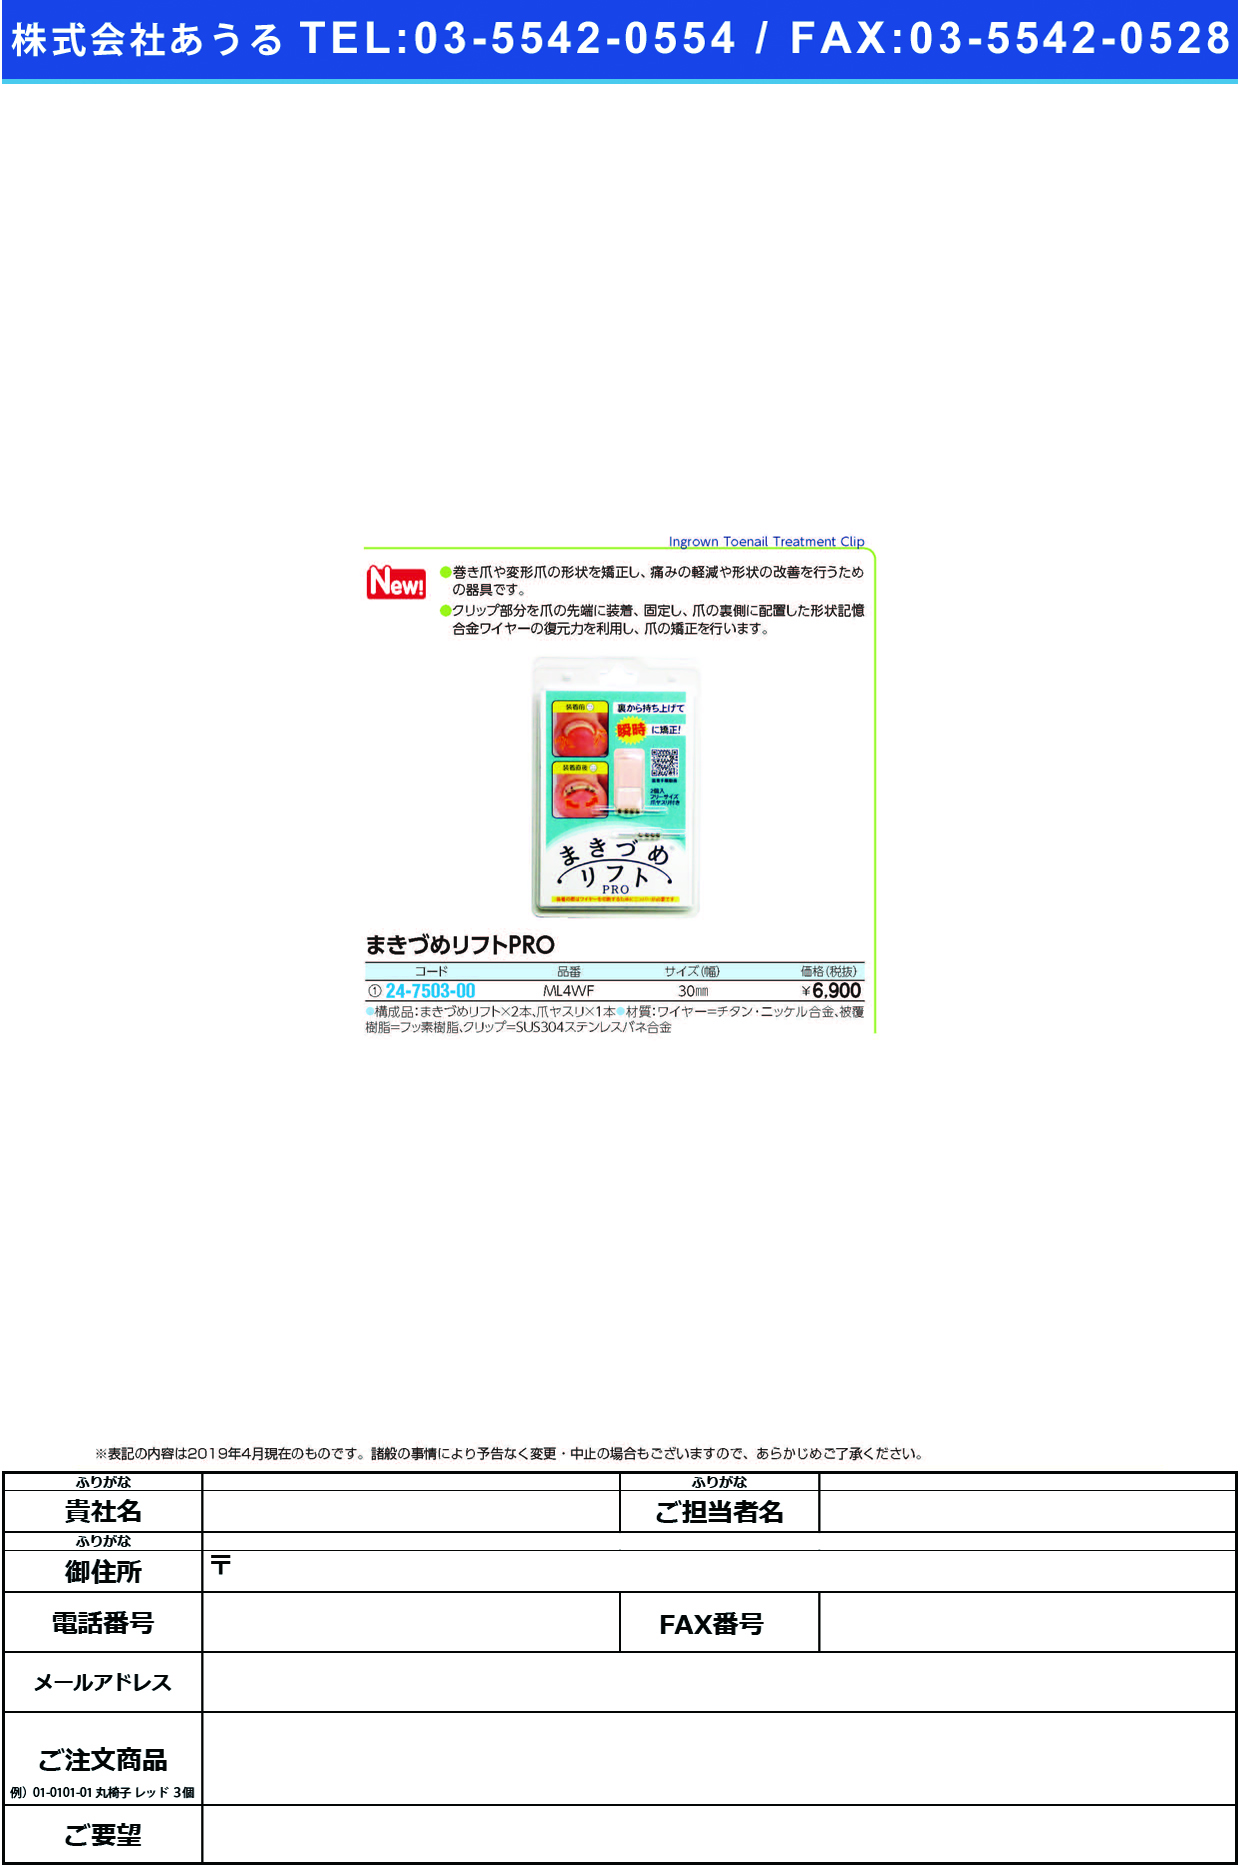 (24-7503-00)まきづめリフトＰＲＯML4WF(2ﾎﾝｲﾘ)30MM ﾏｷﾂﾞﾒﾘﾌﾄPRO(ＪＰＳ)【1箱単位】【2019年カタログ商品】